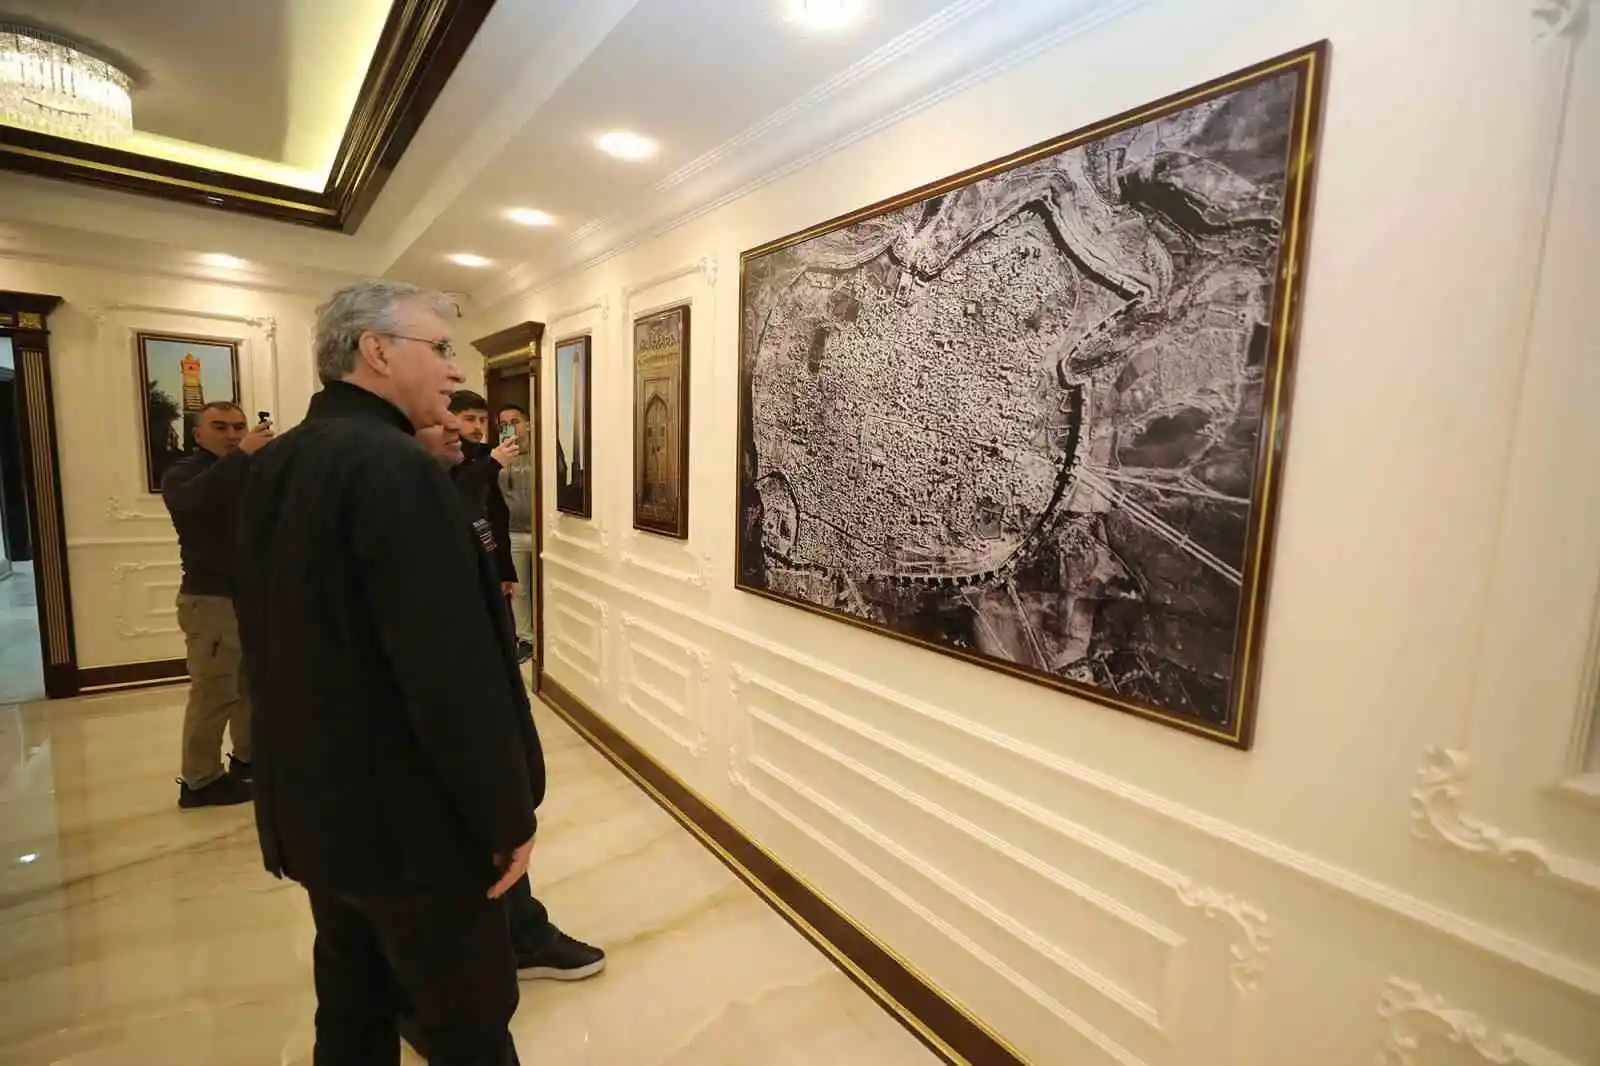 Başkan Yüce Diyarbakır'da: "Dertlere derman olmaya geldik"
